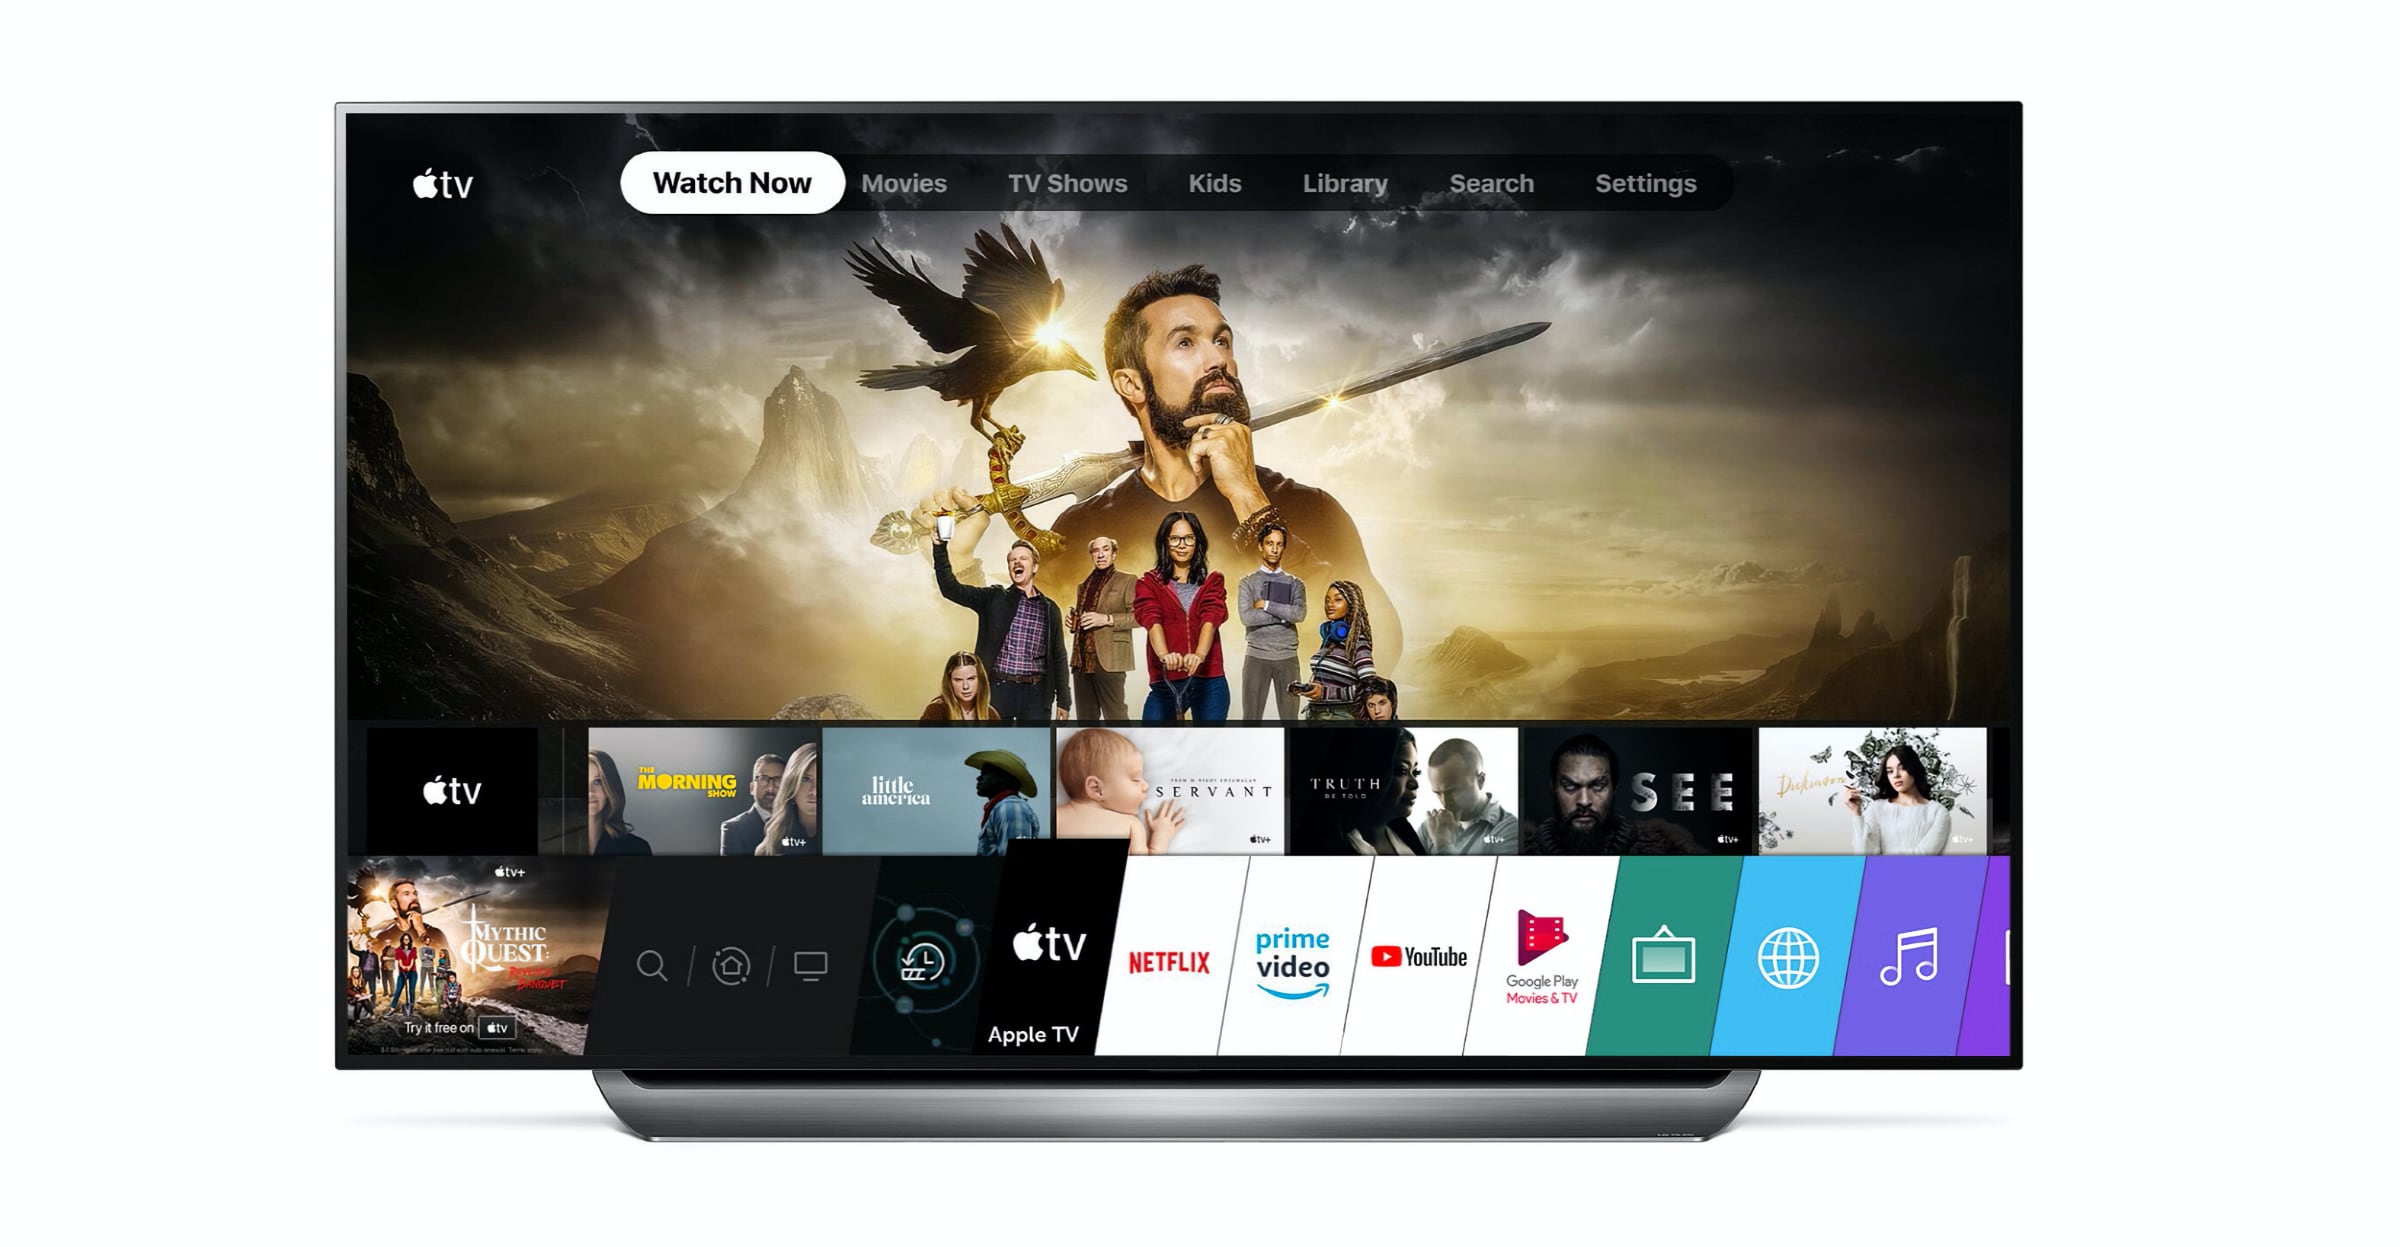 Apples TV app TV+ klar 2018 TV - FlatpanelsDK